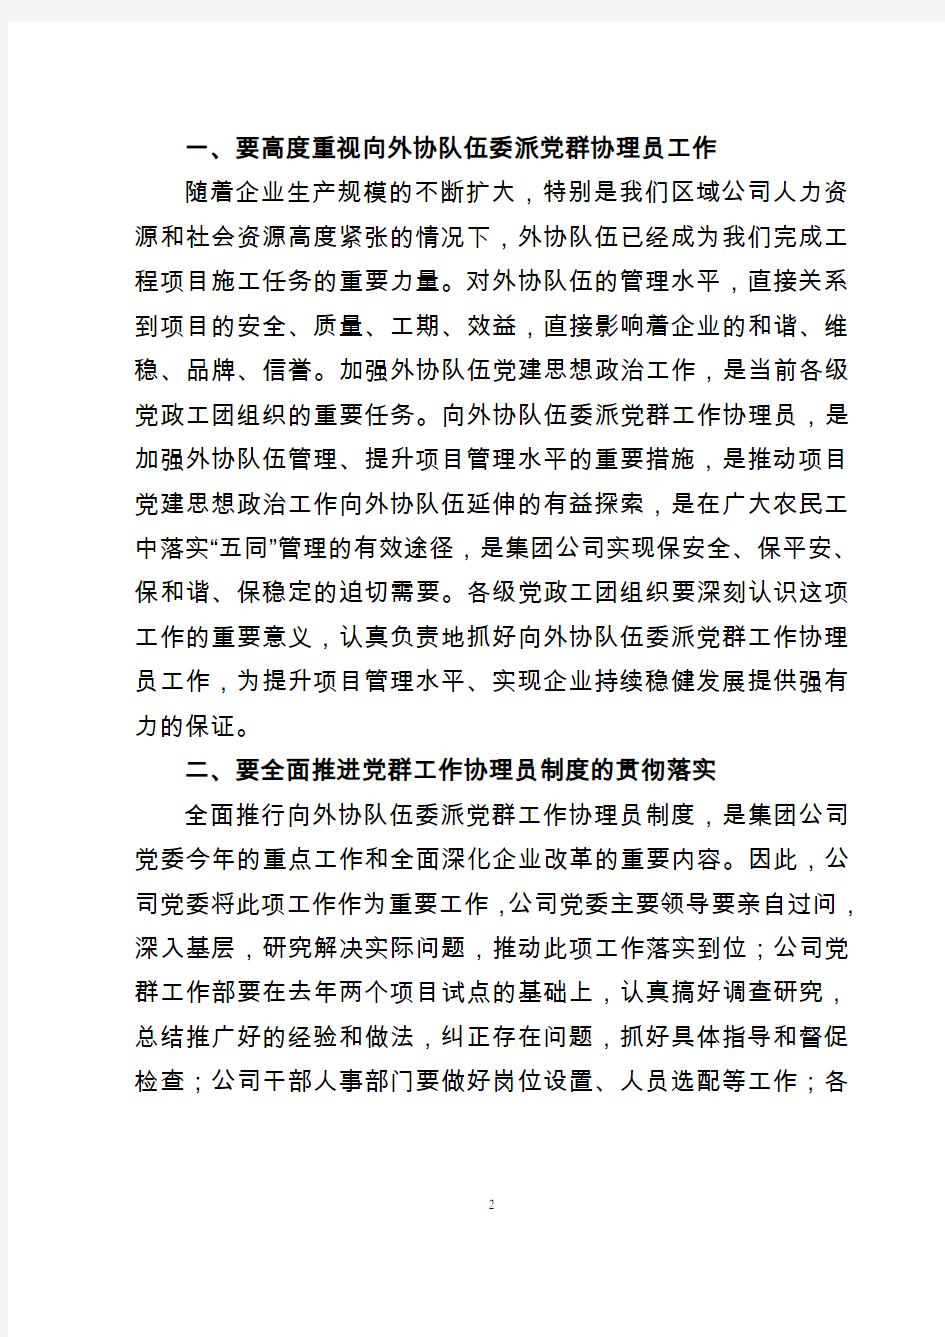 关于印发《中铁一局上海分公司工程项目党群协理员管理工作细则》的通知